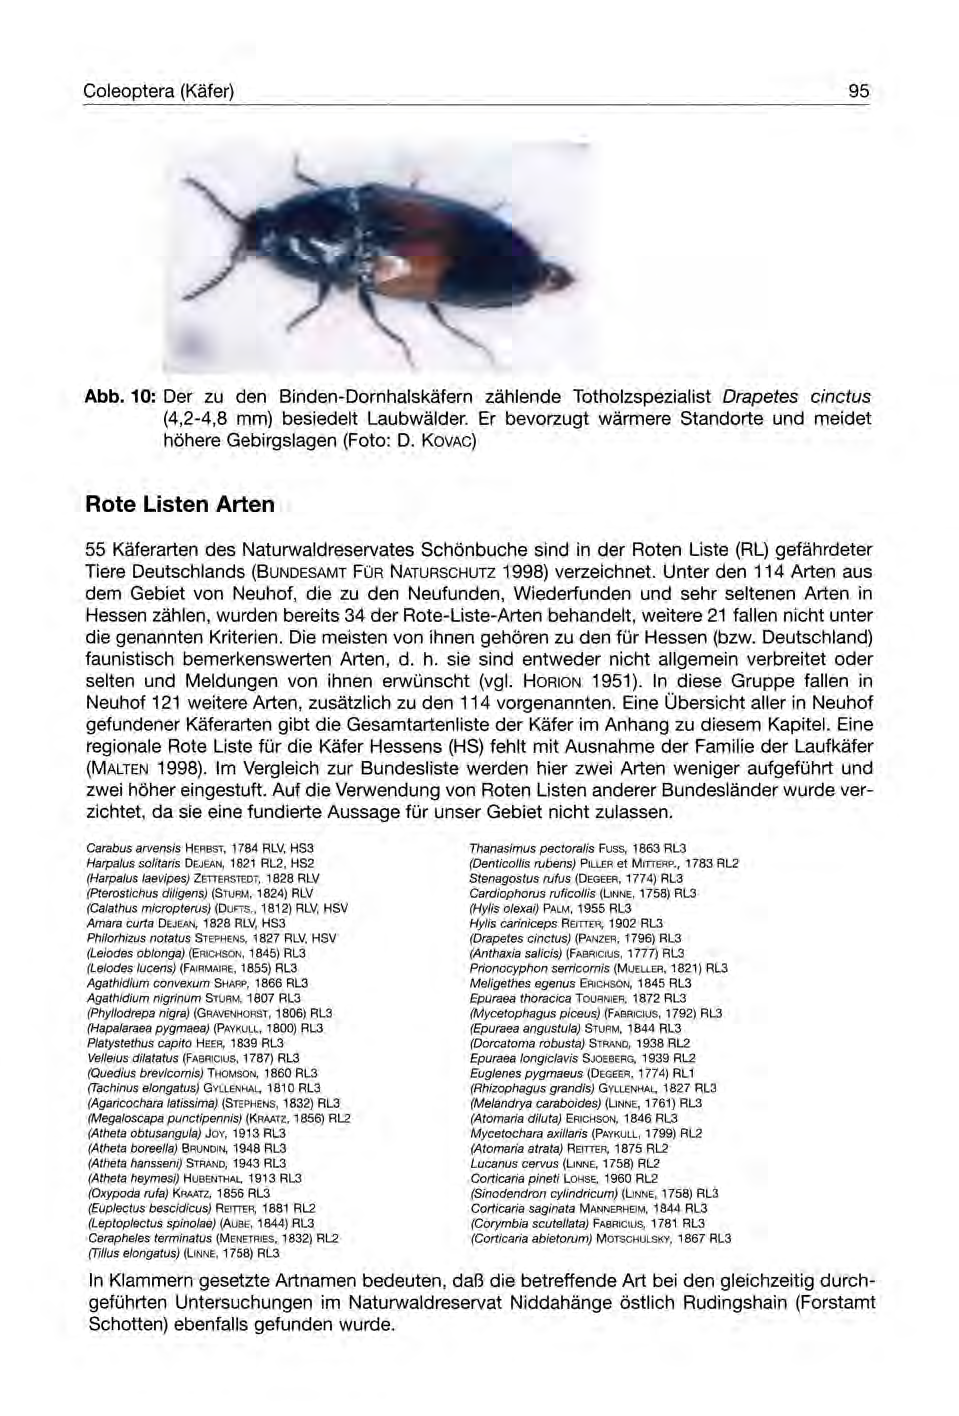 Coleoptera (Käfer) 95 Abb. 10: Der zu den Binden-Dornhalskäfern zählende Totholzspezialist Drapetes cinctus (4,2-4,8 mm) besiedelt Laubwälder.